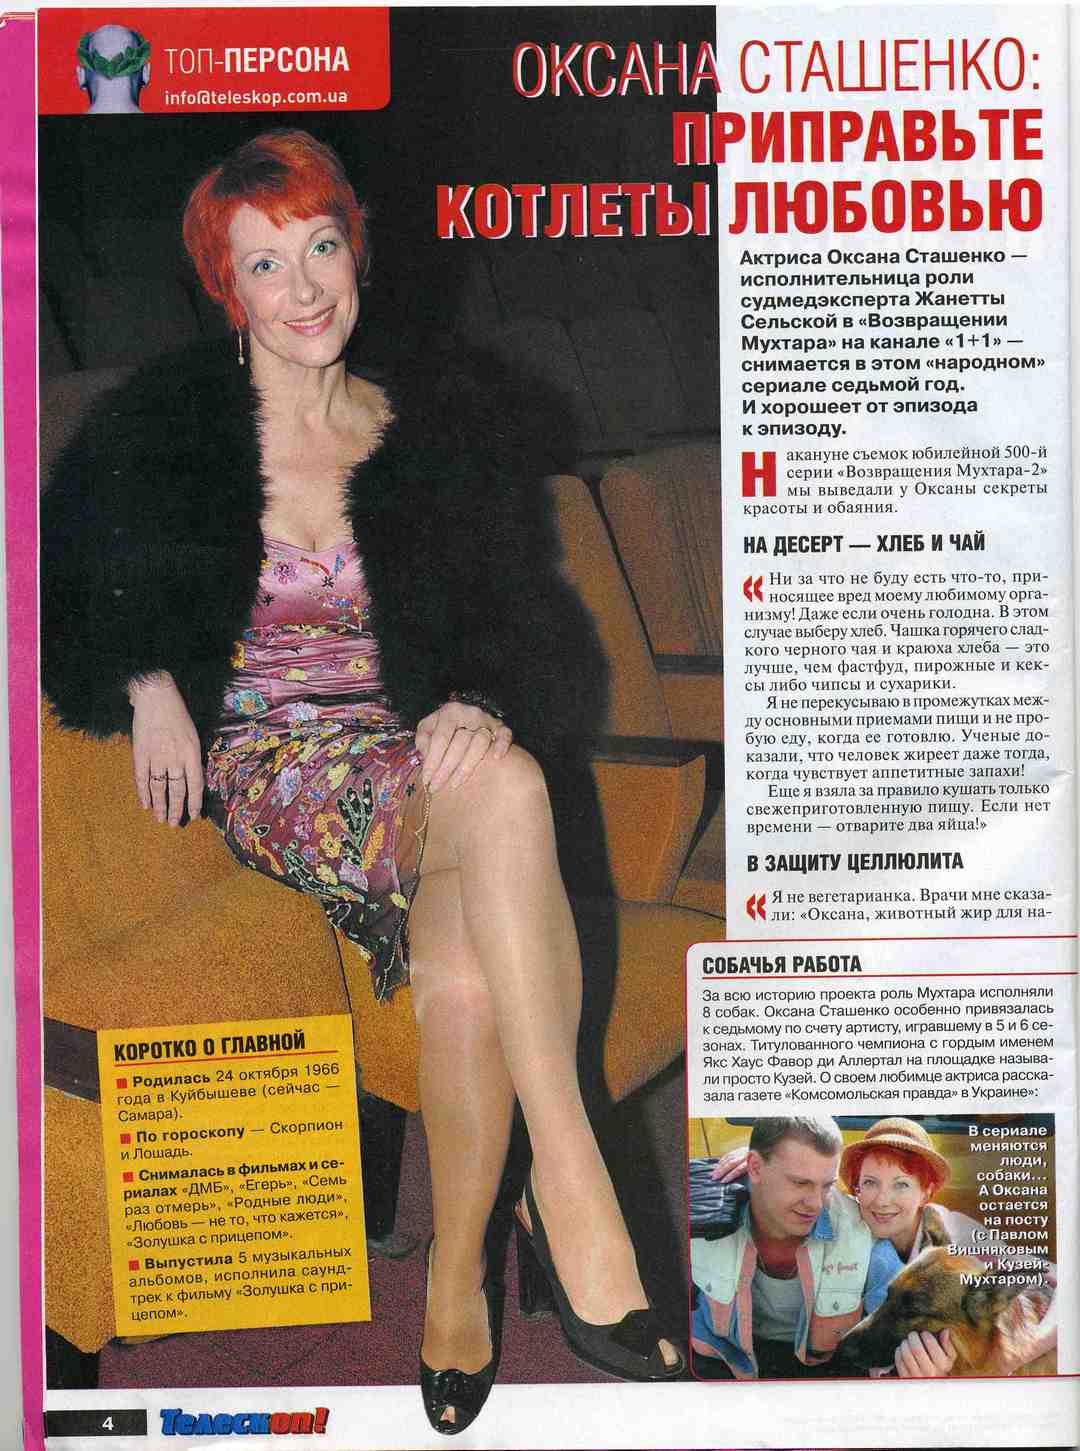 Актриса Оксана Сташенко в колготках